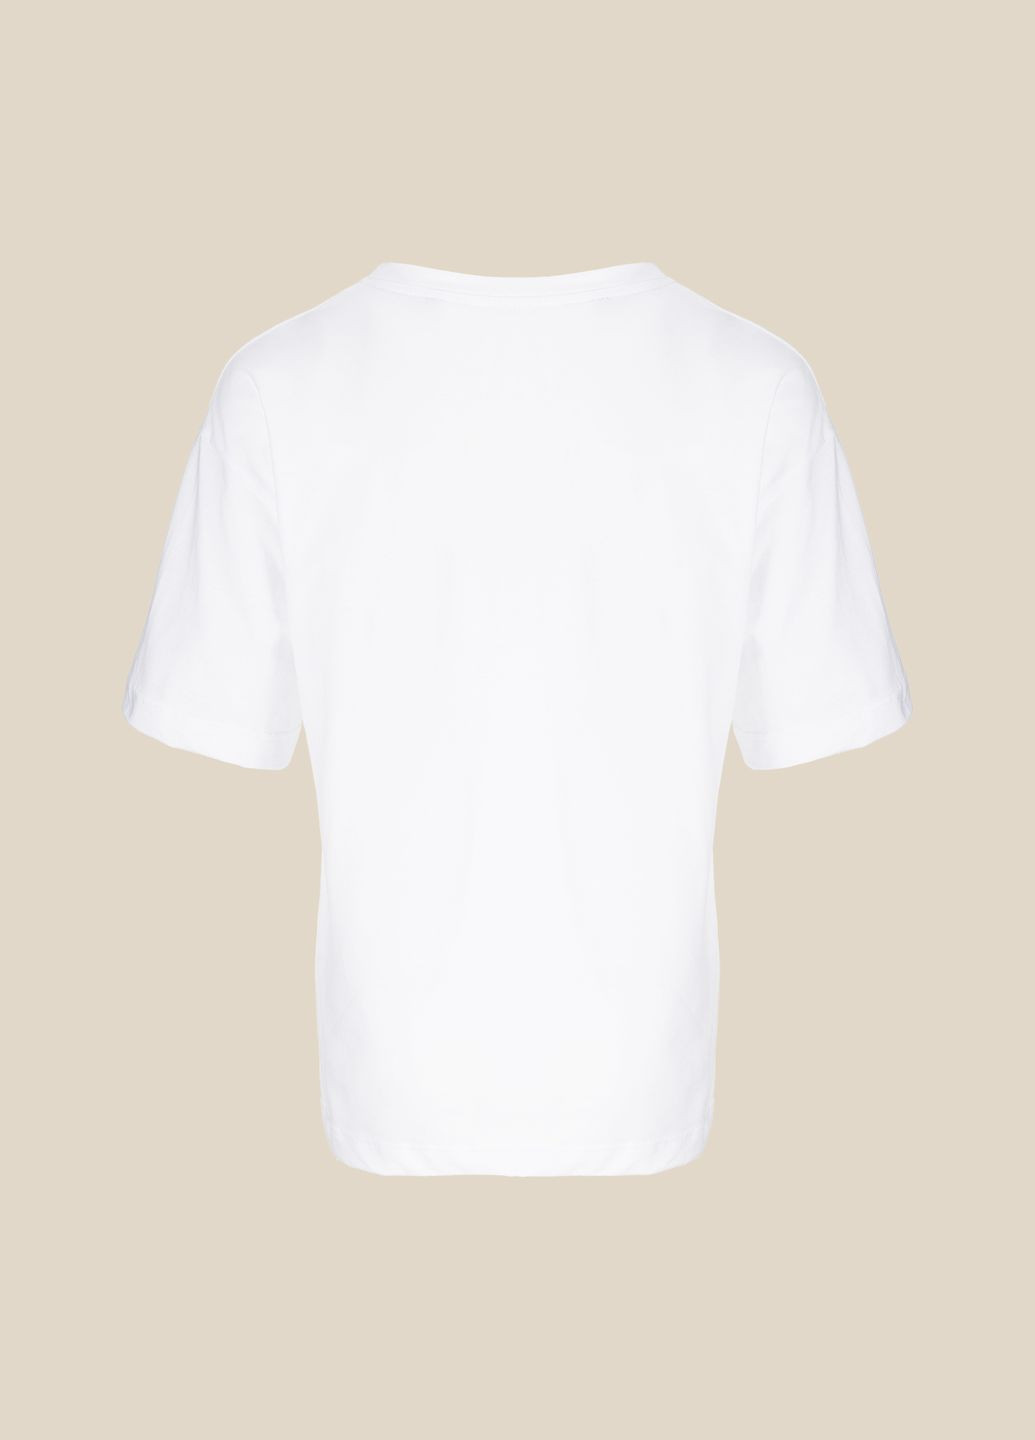 Белая летняя футболка LAWA